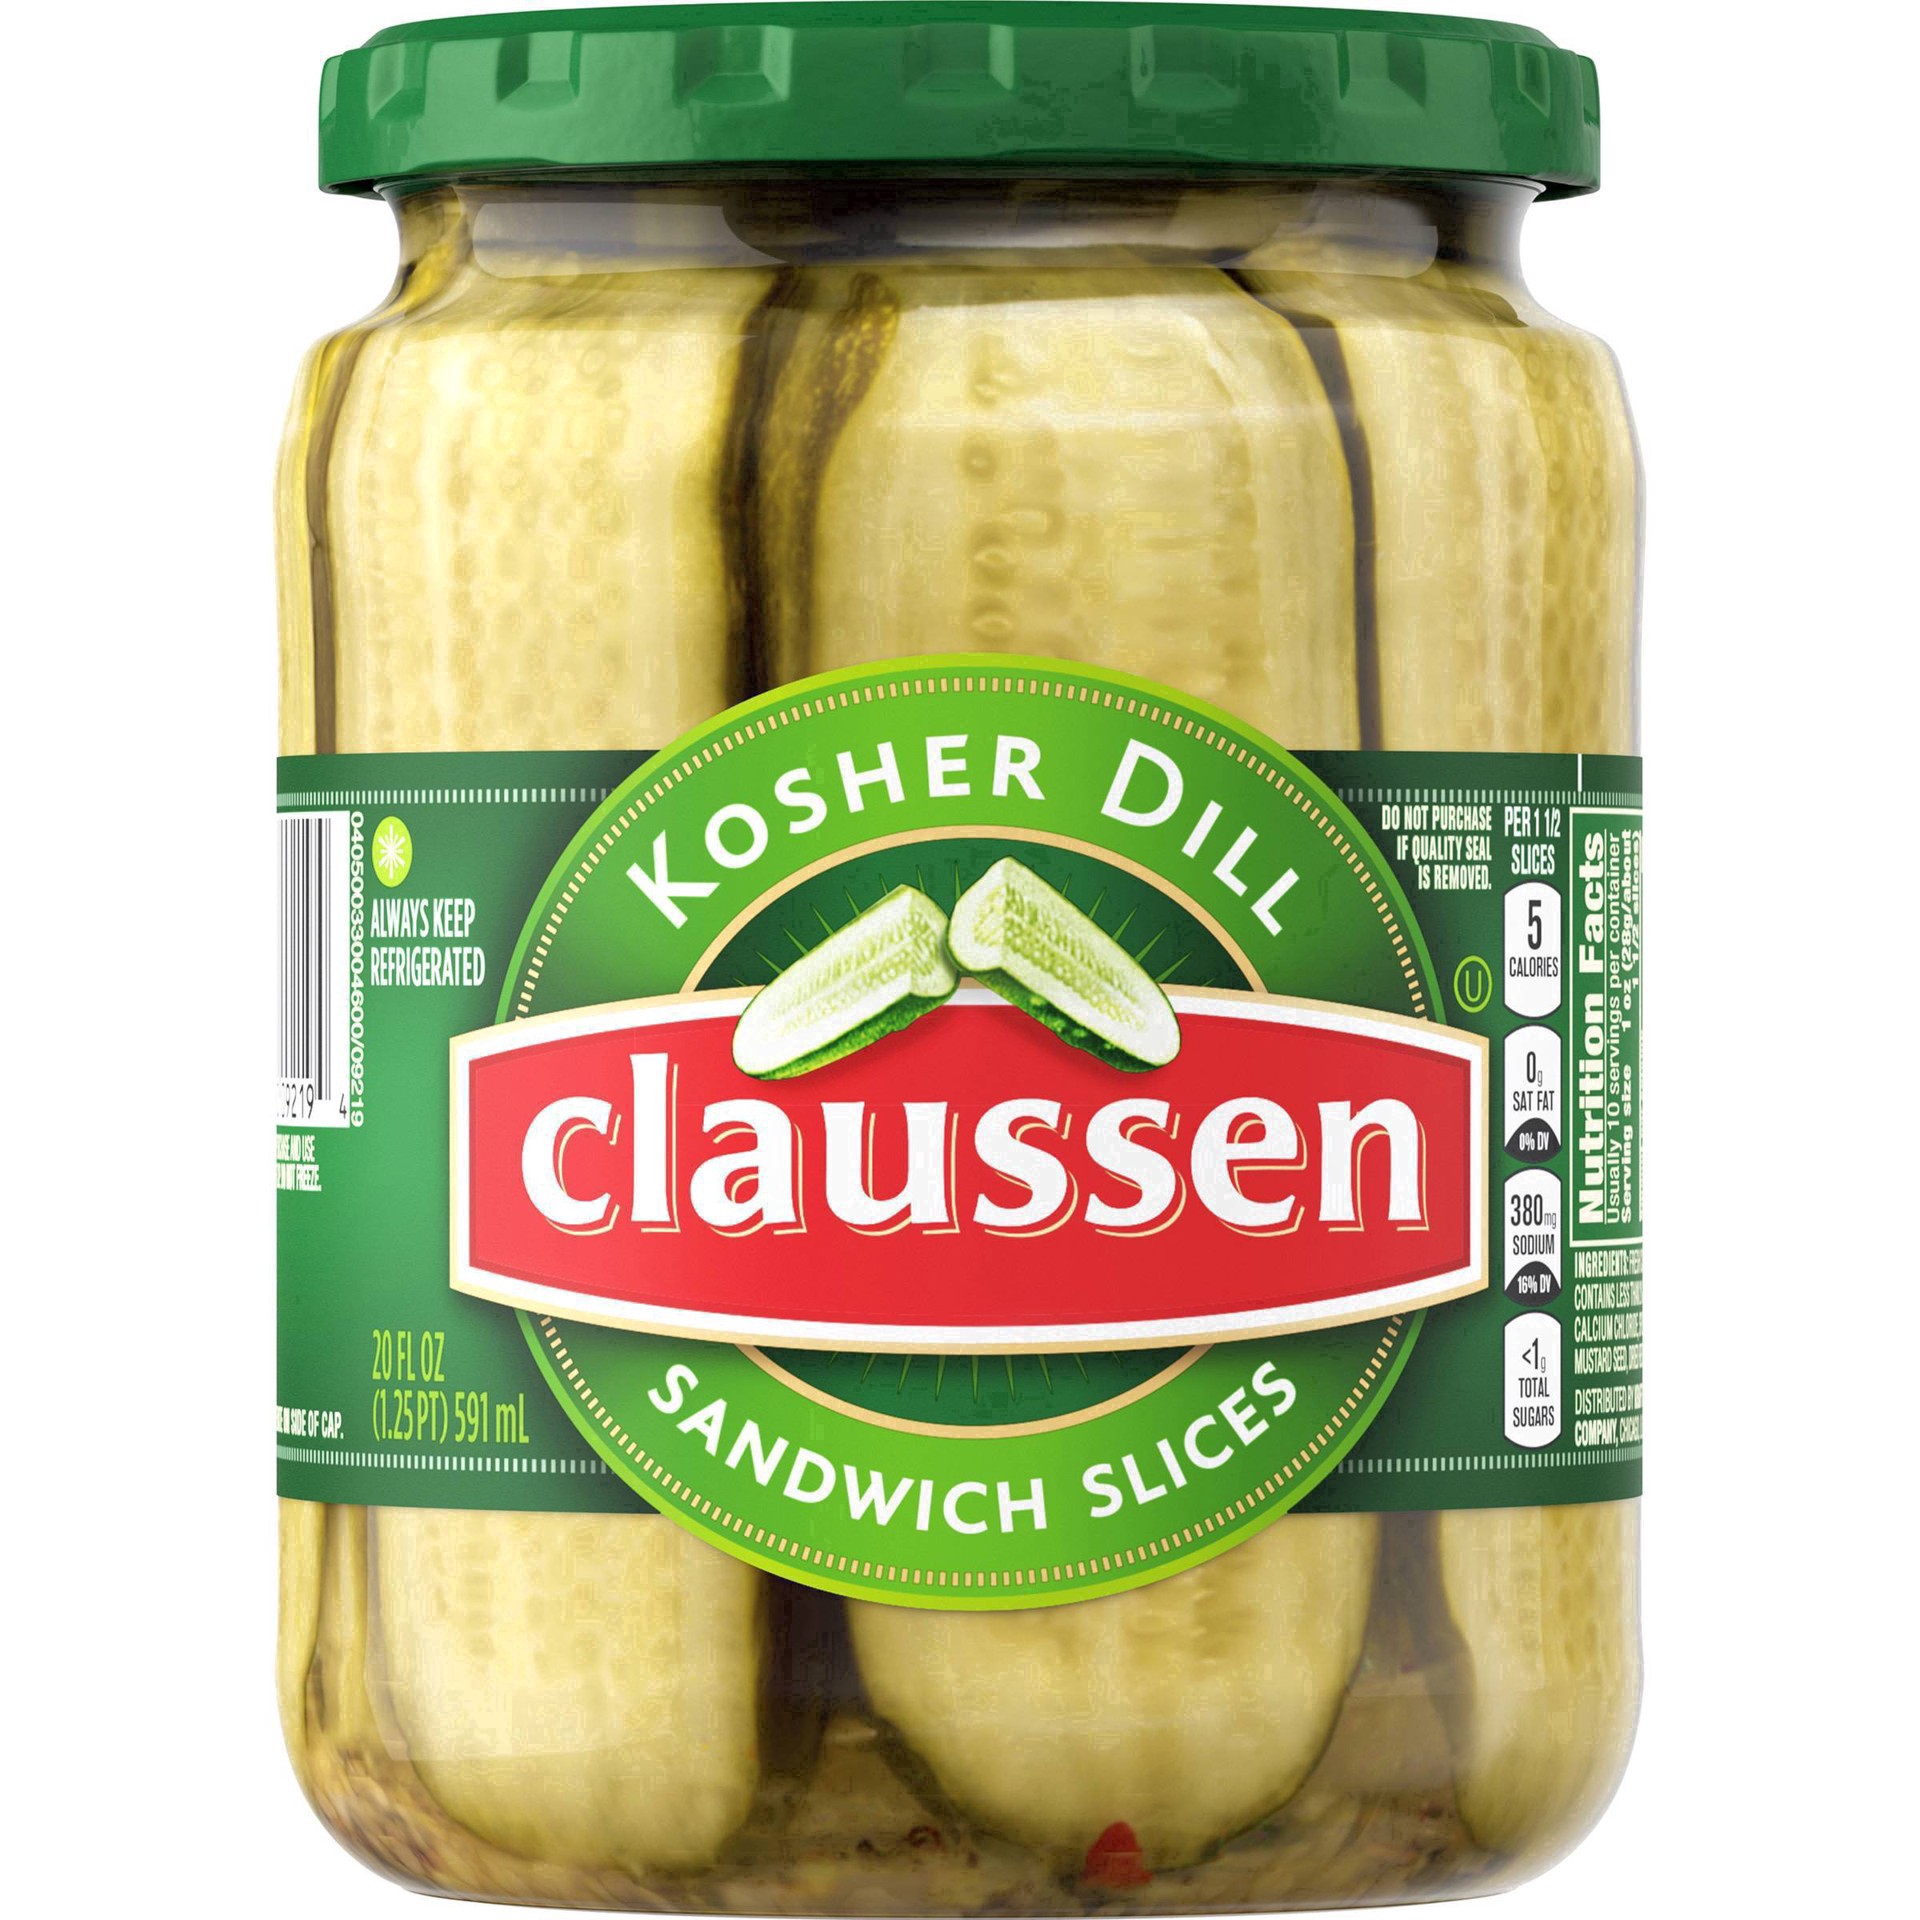 slide 33 of 144, Claussen Kosher Dill Pickle Sandwich Slices, 20 fl. oz. Jar, 20 fl oz